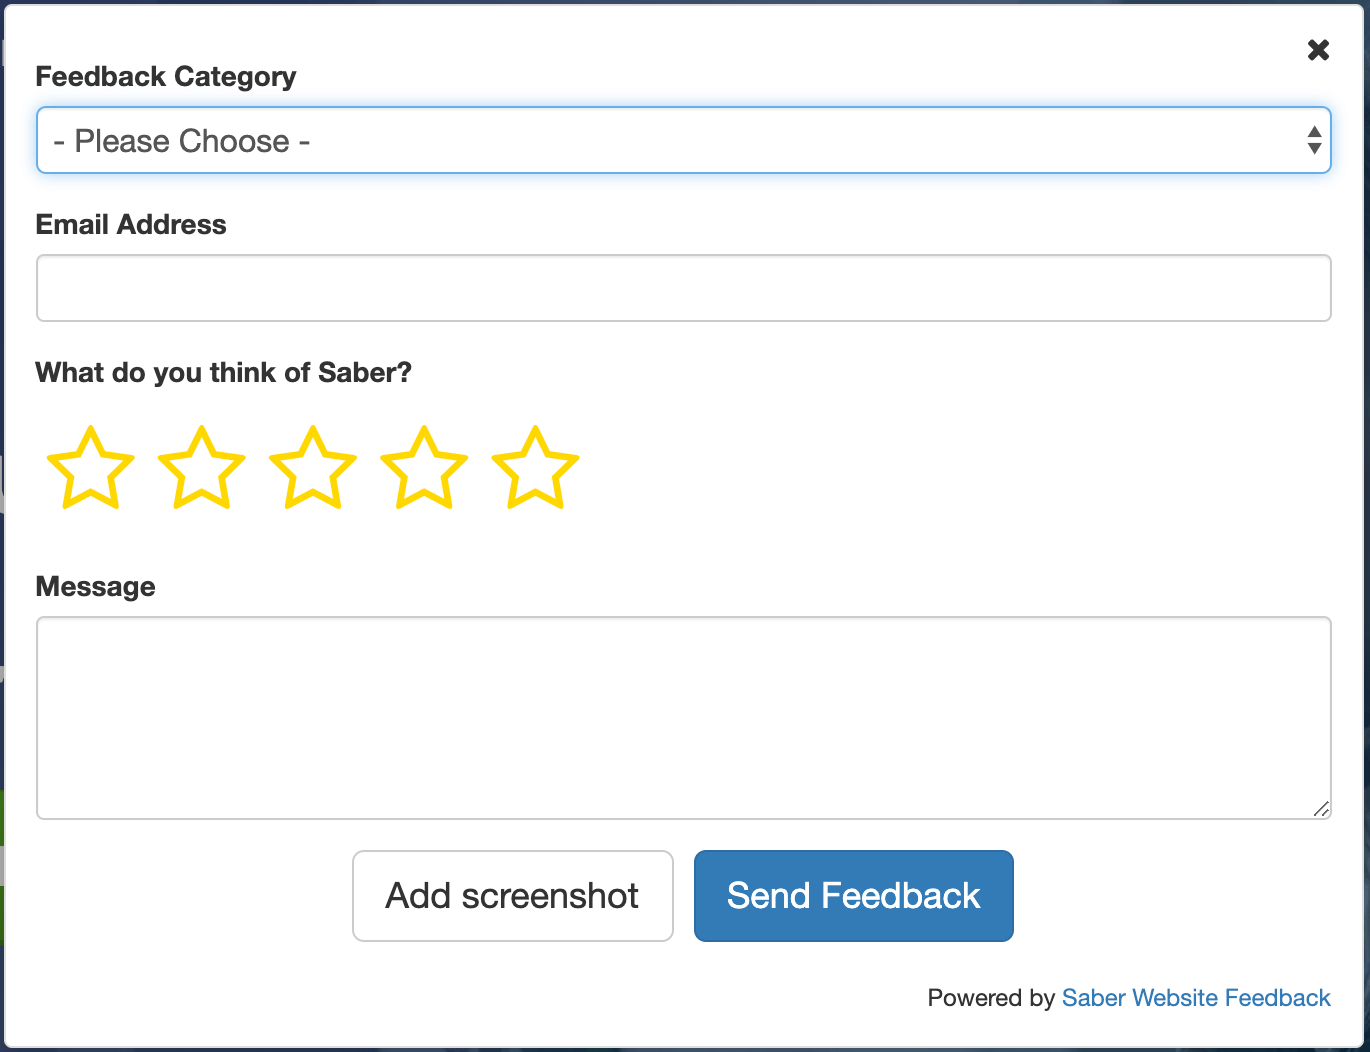 Saber's customisable feedback form